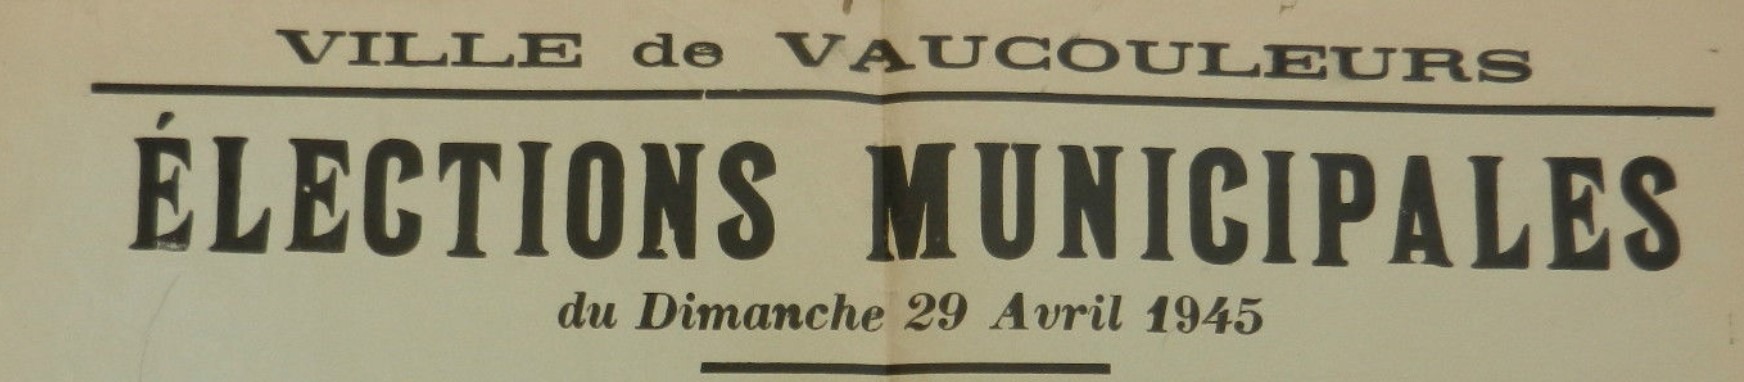 Vaucouleurs Election 29 avril 1945